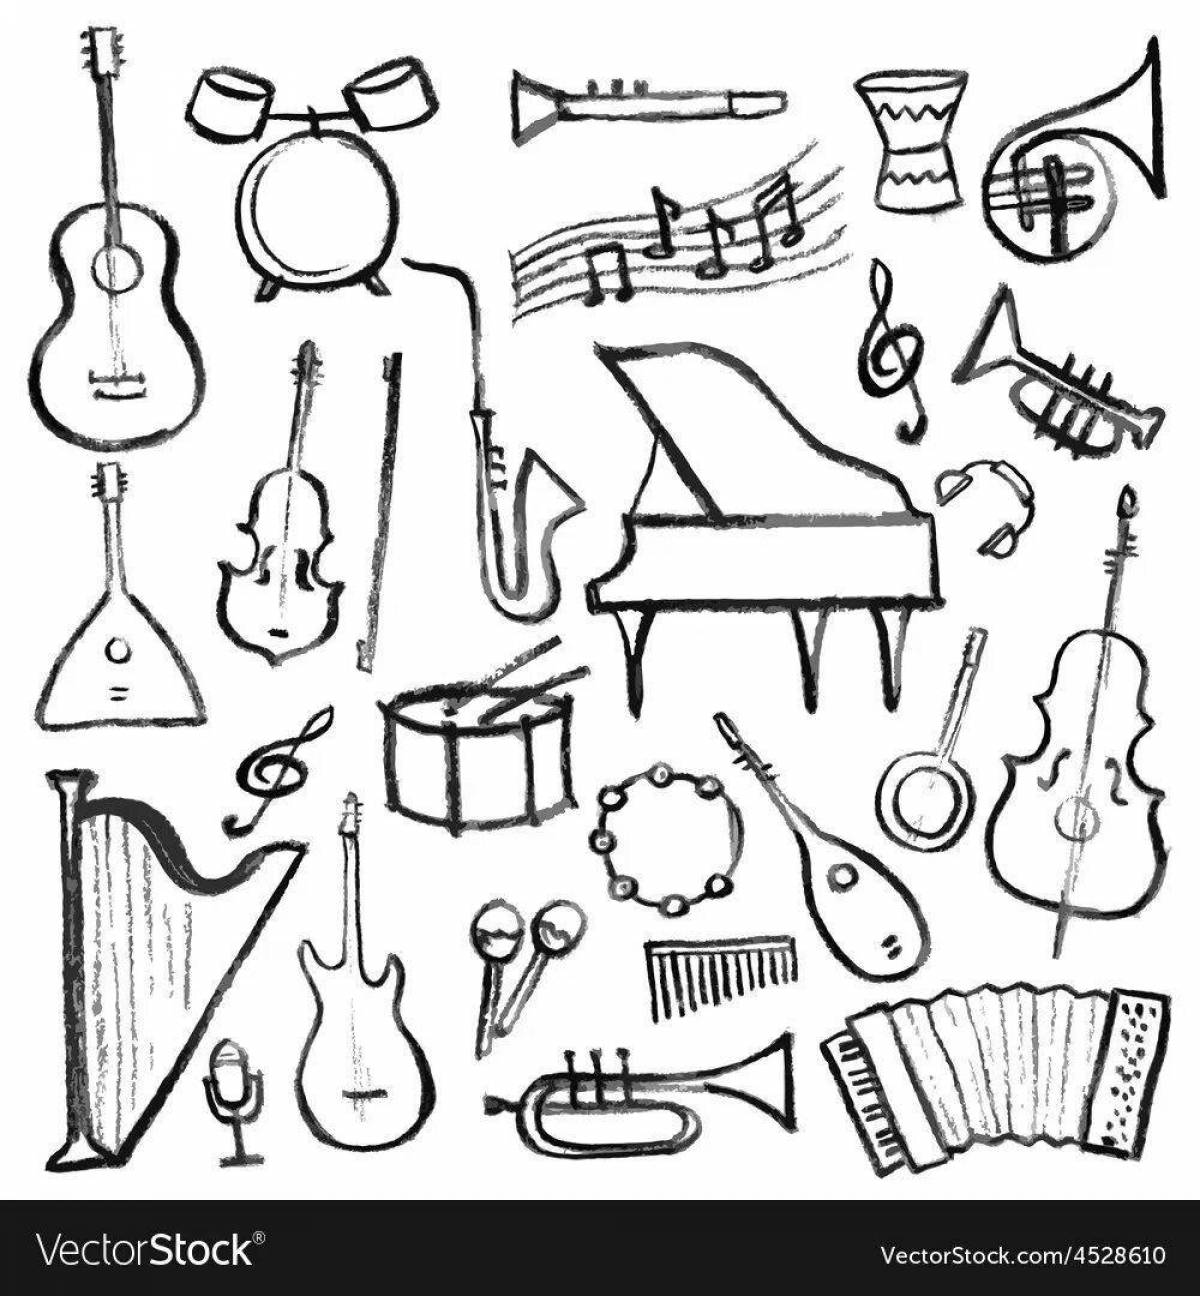 Увлекательная раскраска народные музыкальные инструменты для детей